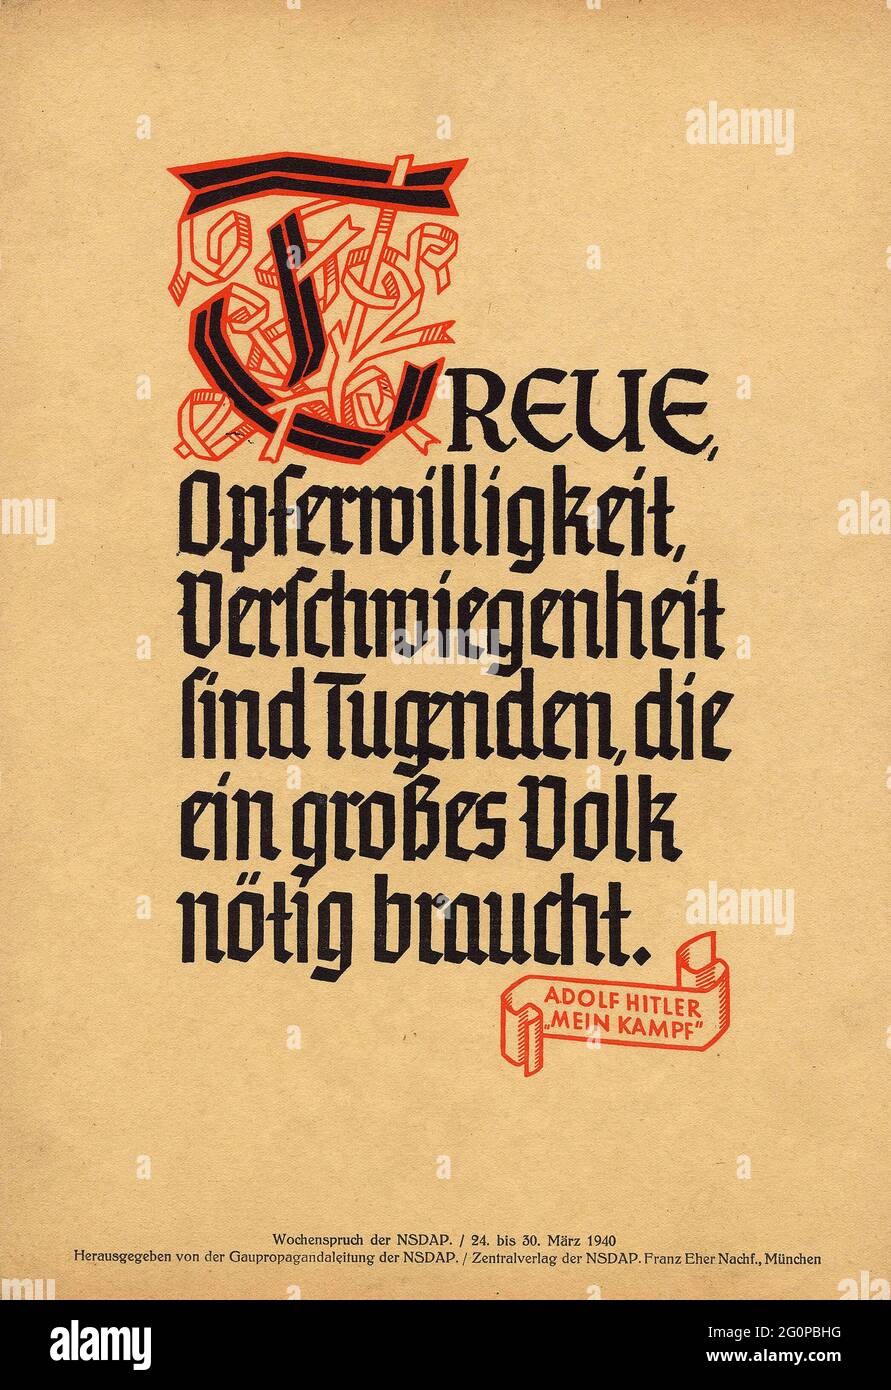 Ein altes Nazi-Propagandaplakat von 1940 mit einem Zitat aus Adolf Hitlers Mein Kampf - Loyalität, Opfer und Schweigen sind Tugenden, die ein großes Volk braucht. Stockfoto